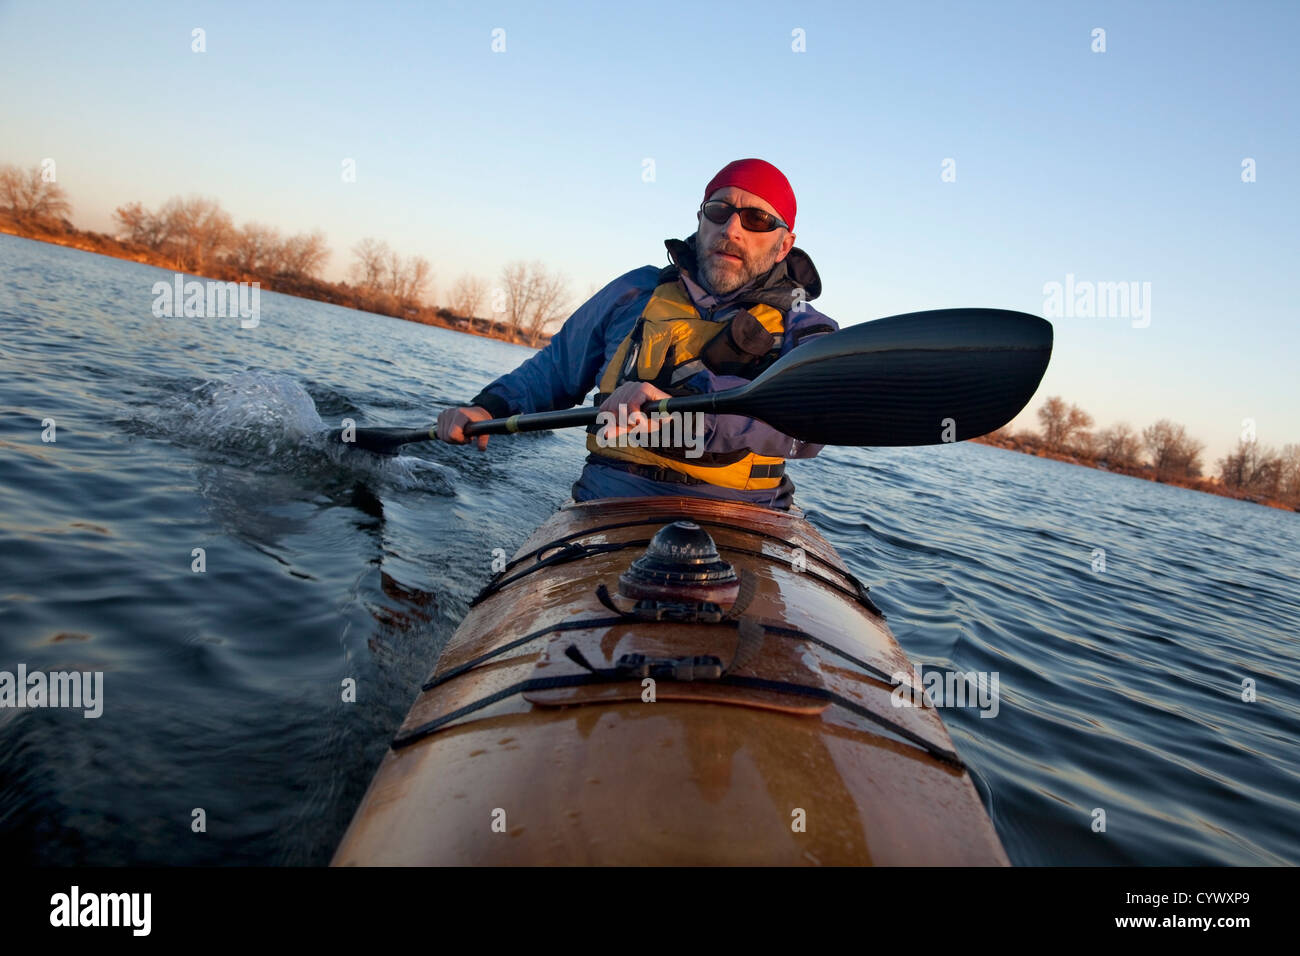 L'exercice de pagayeur mâles matures (en tournant à l'aide de bateau de course de la gouverne avec son aile pagaie en fibre de carbone) en kayak de mer en bois Banque D'Images